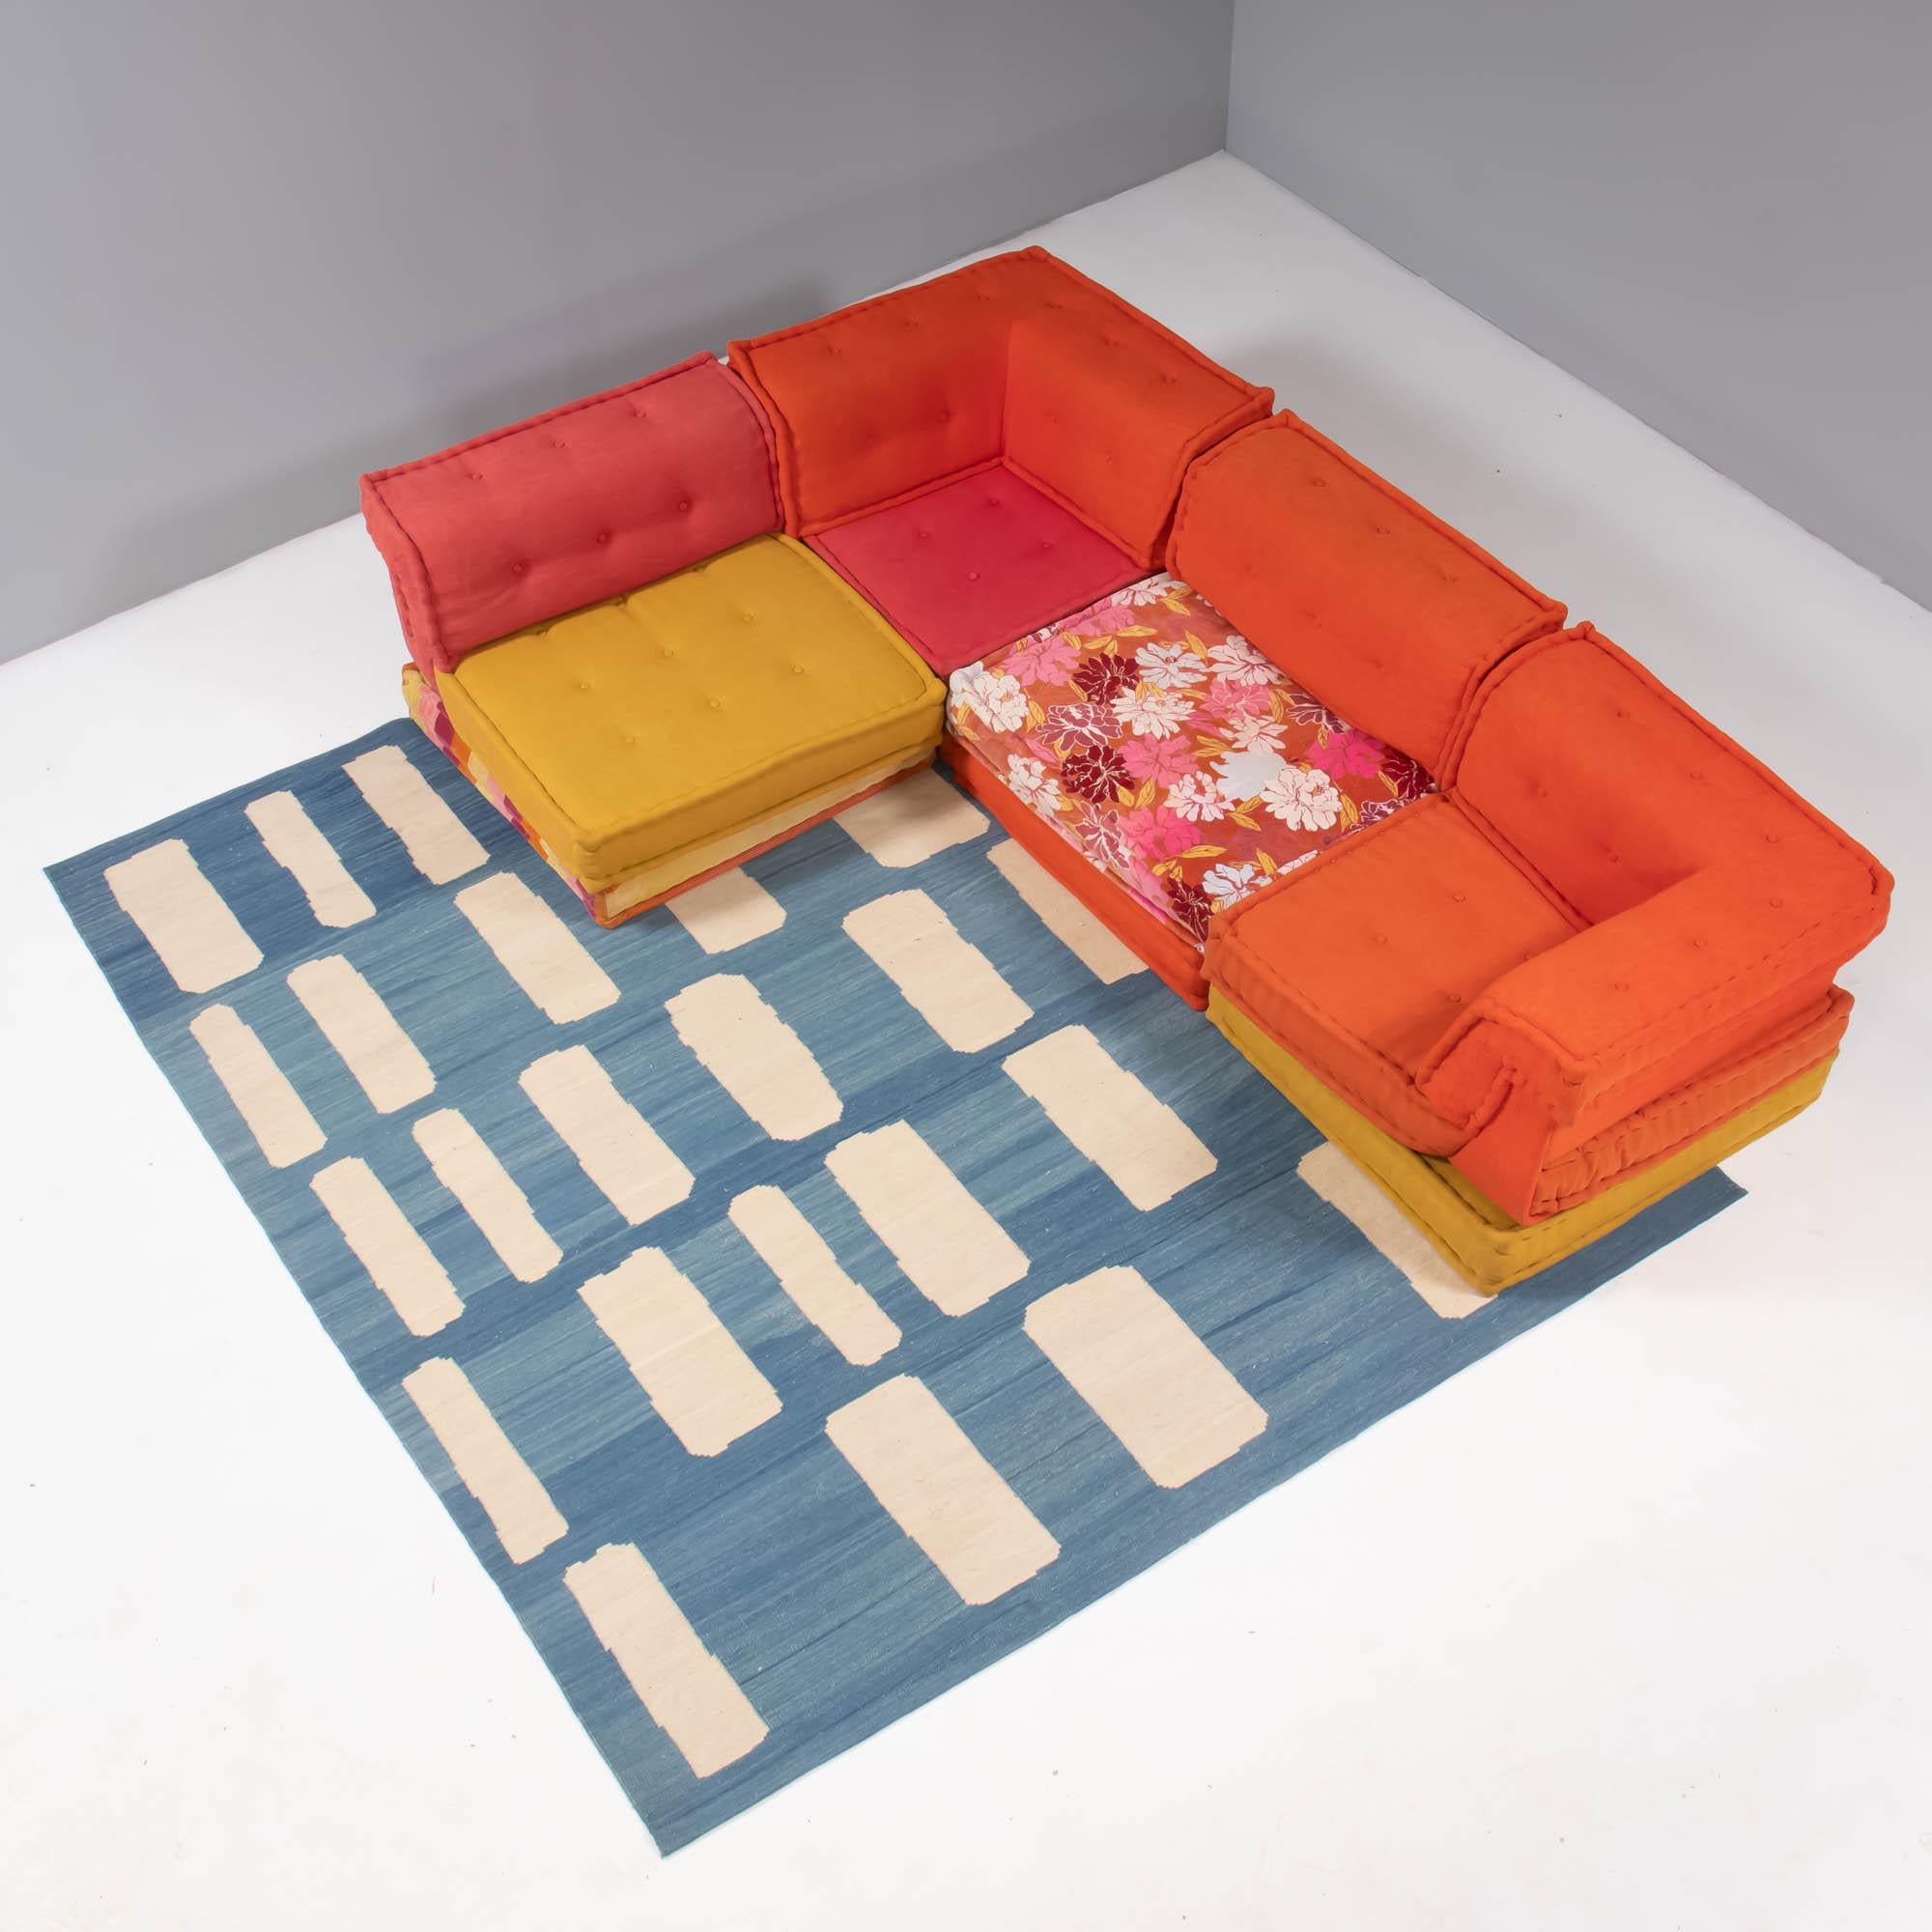 Conçu à l'origine par Hans Hopfer pour Roche Bobois en 1971, le canapé Mah Jong est devenu un classique du design.

Composées de douze pièces, toutes les pièces seront recouvertes d'un revêtement personnalisé de votre choix. En fonction de vos